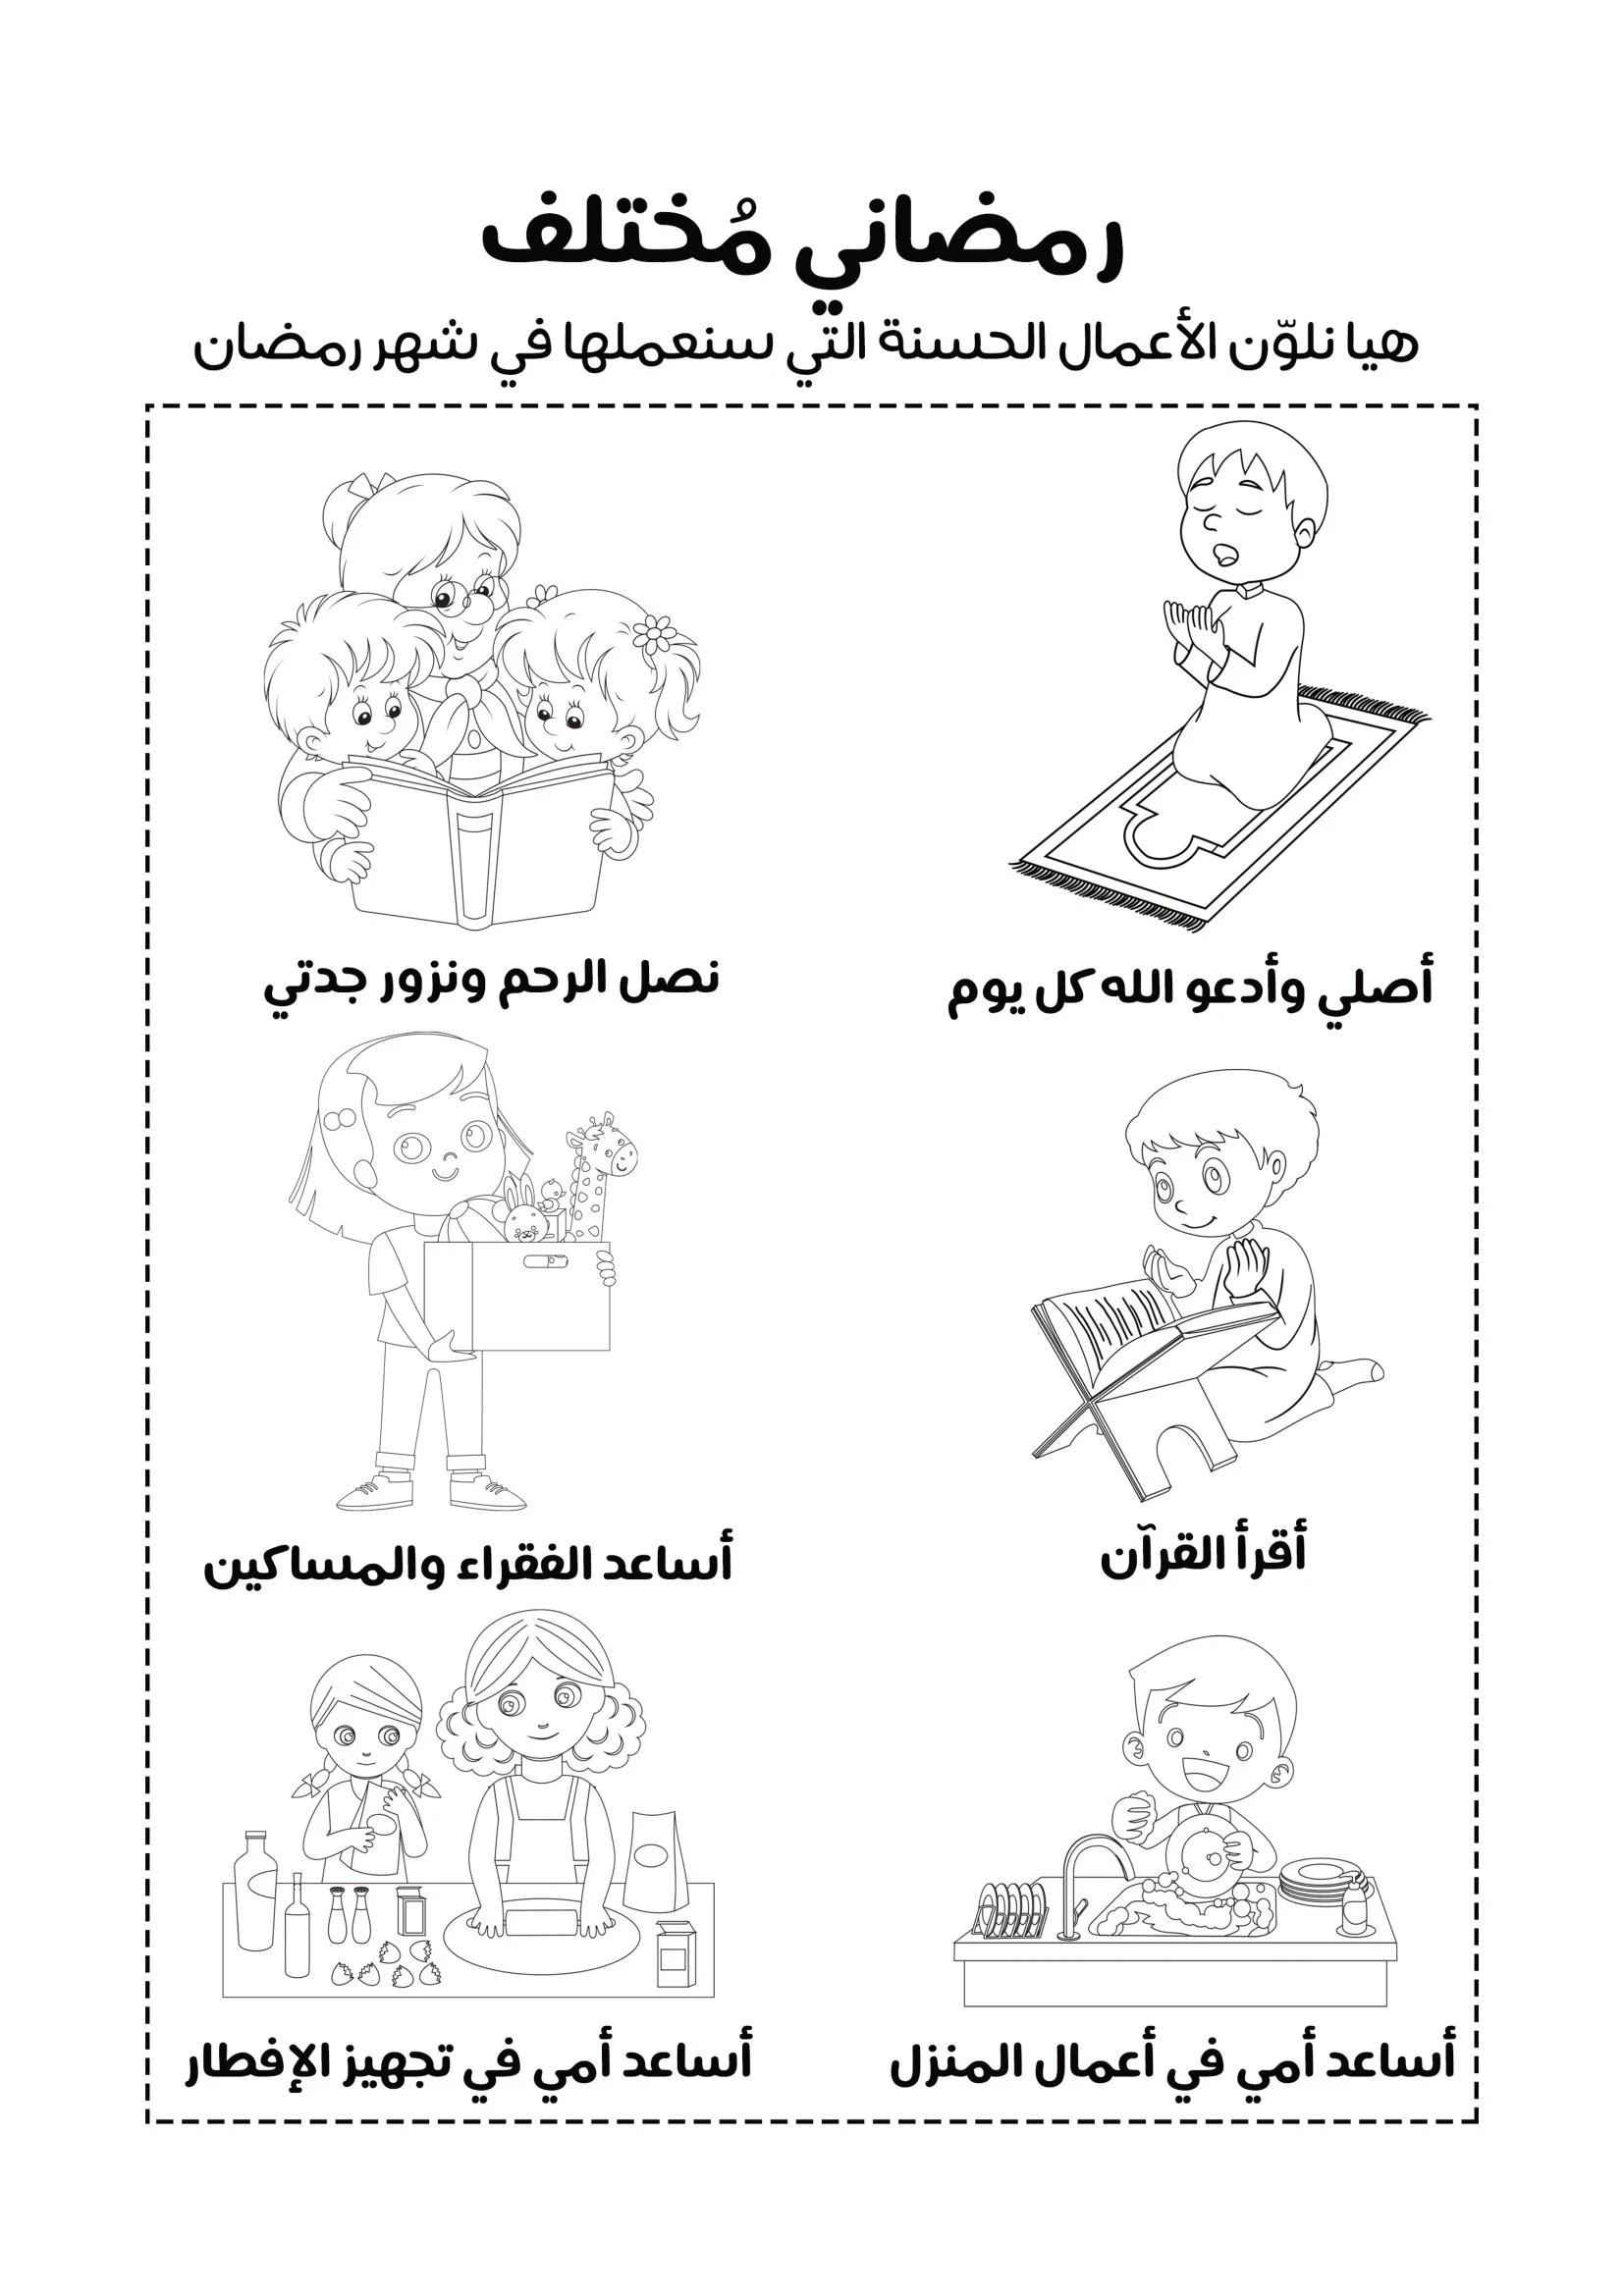 كتيب أنشطة رمضانية pdf تحميل مباشر